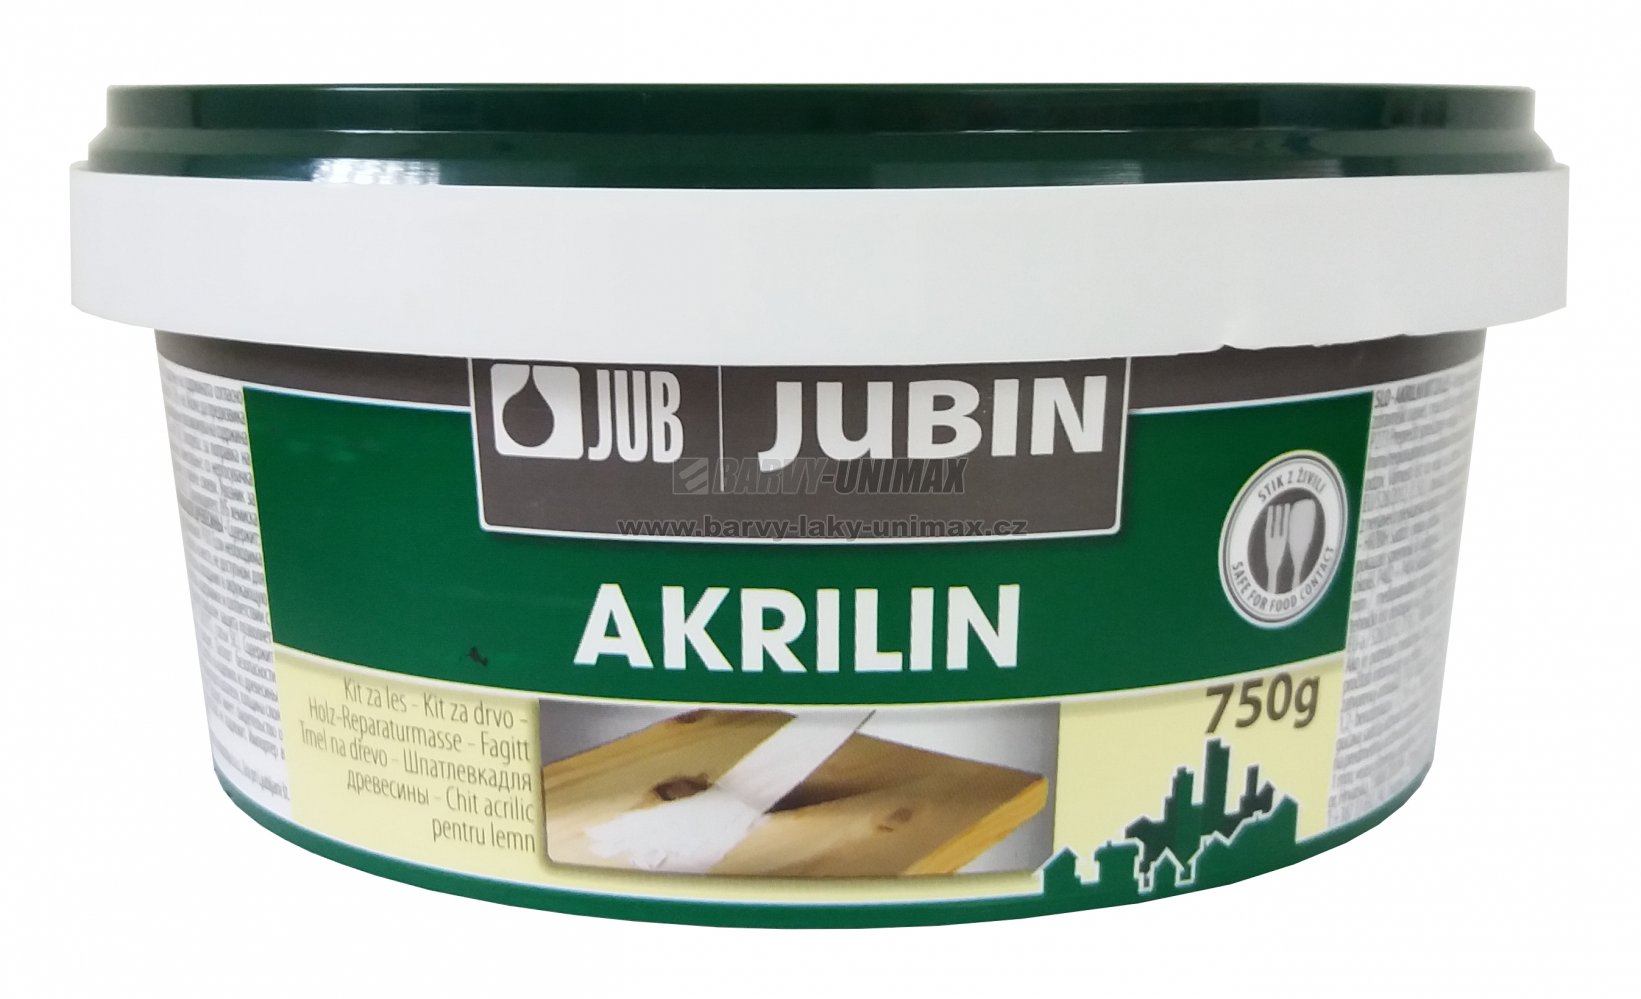 JUB JUBIN Akrilin Buk,8kg